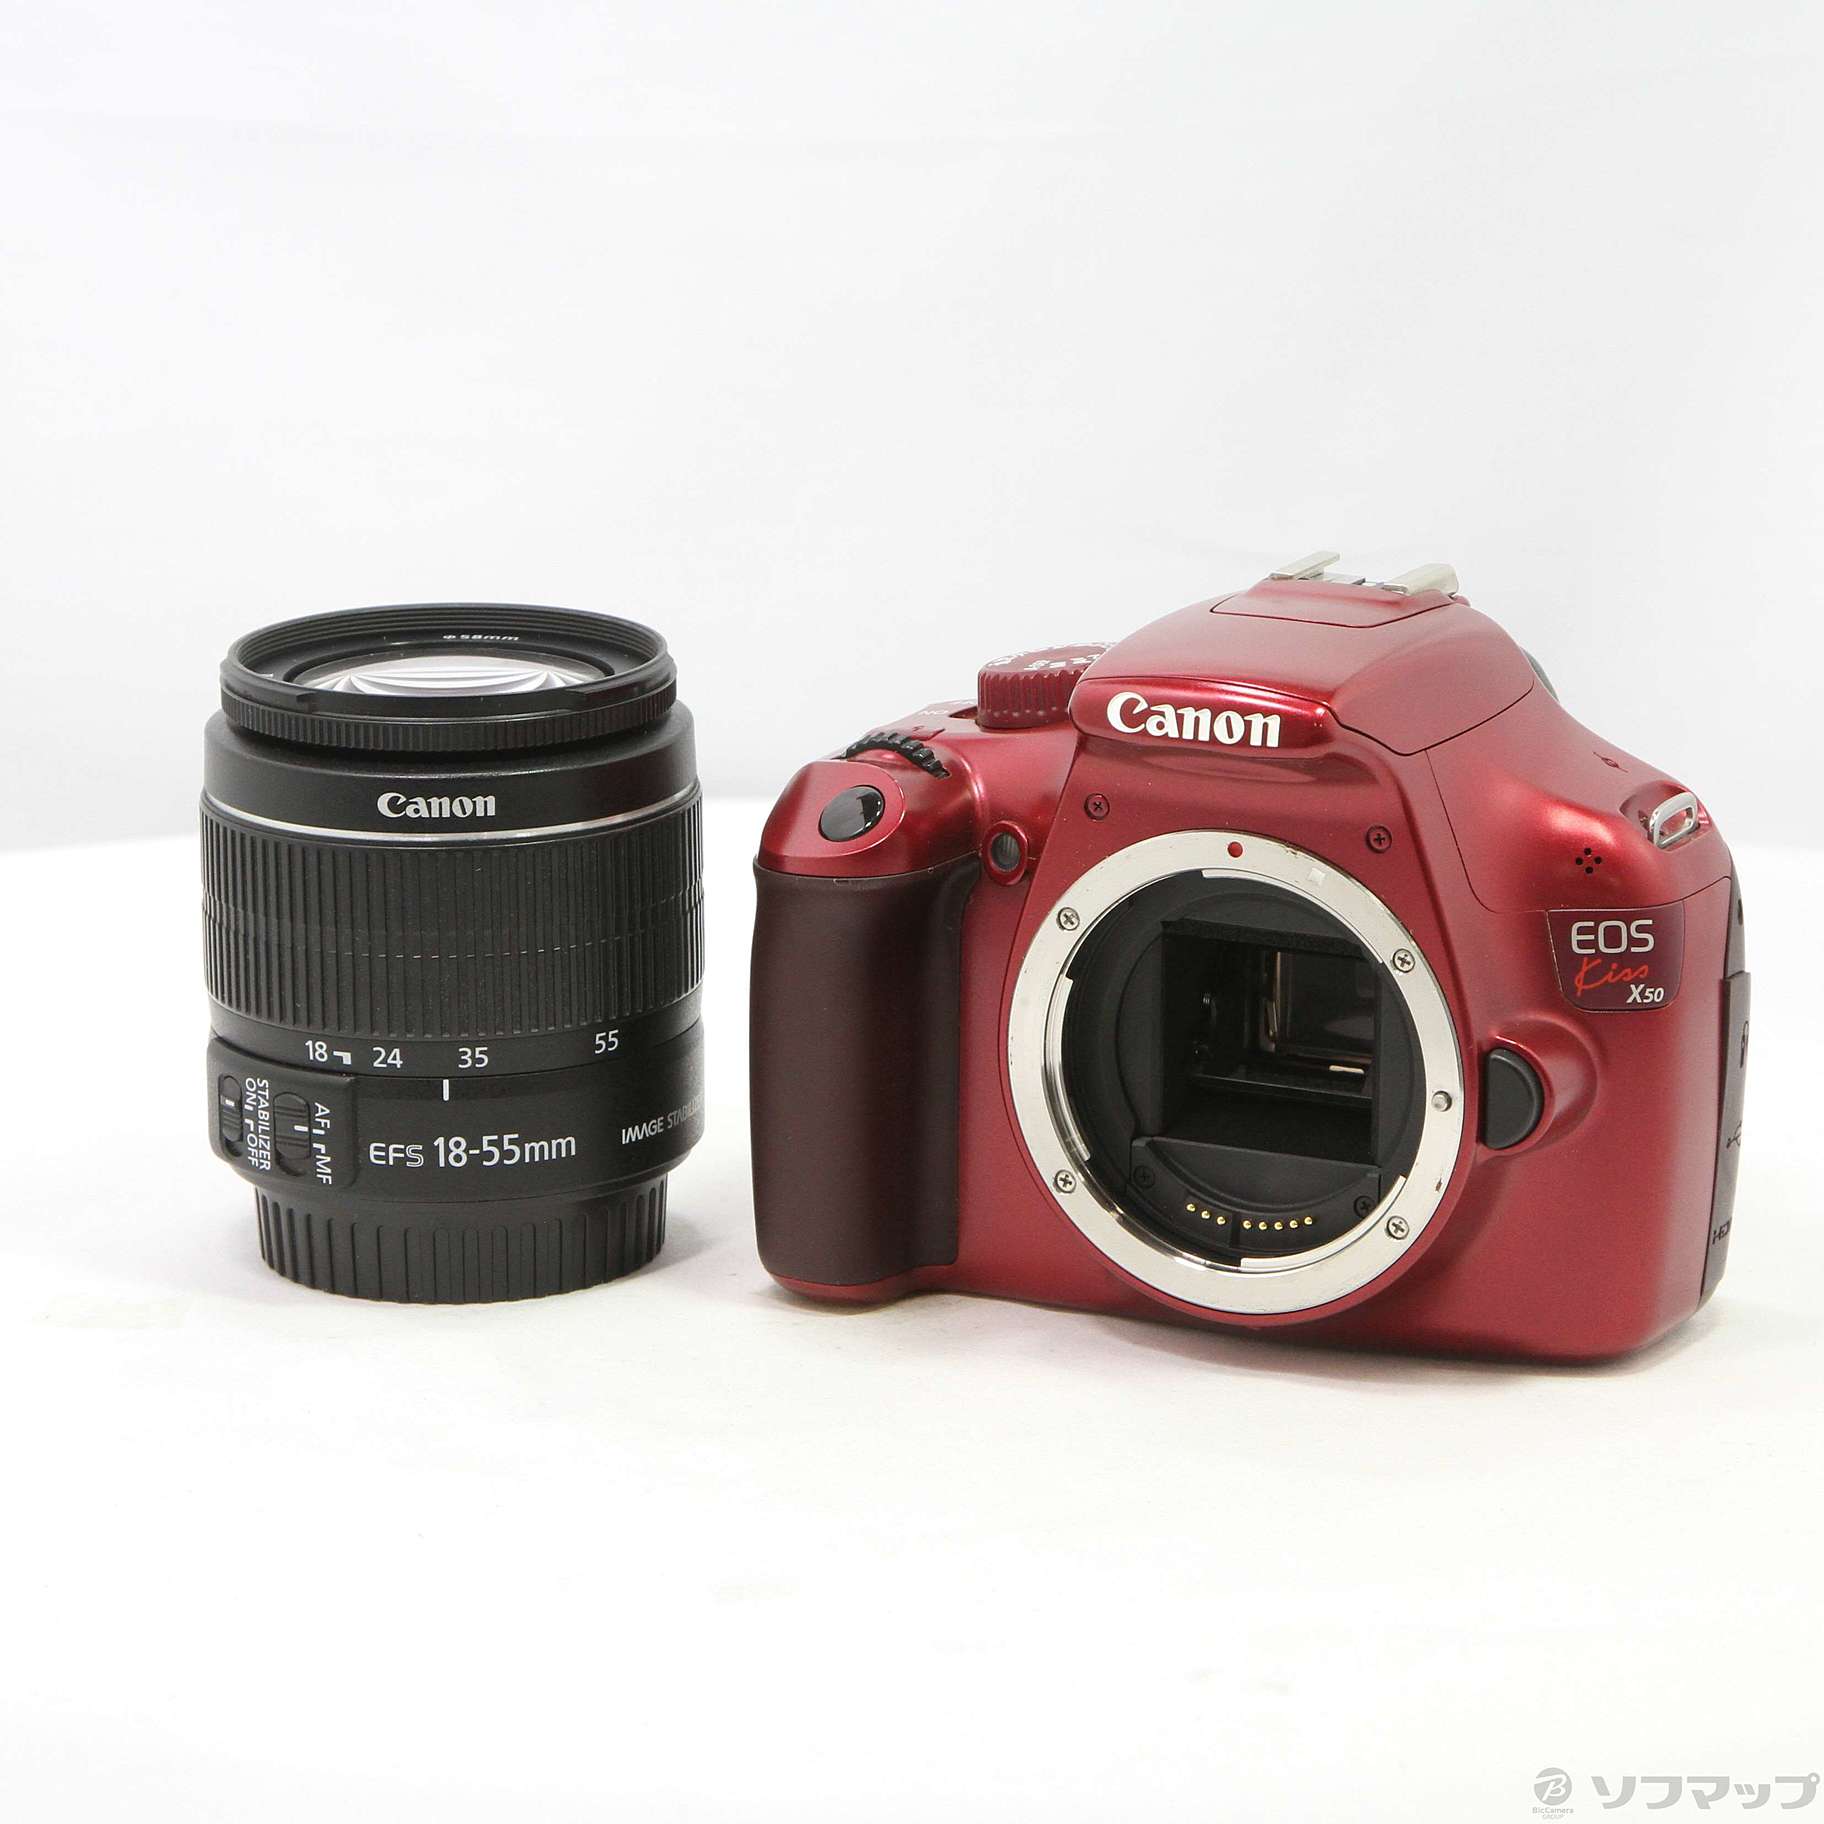 新作通販 Canon デジタル一眼レフカメラ EOS Kiss X7 レンズキット EF-S18-55mm F3.5-5.6 IS STM付属 KIS 